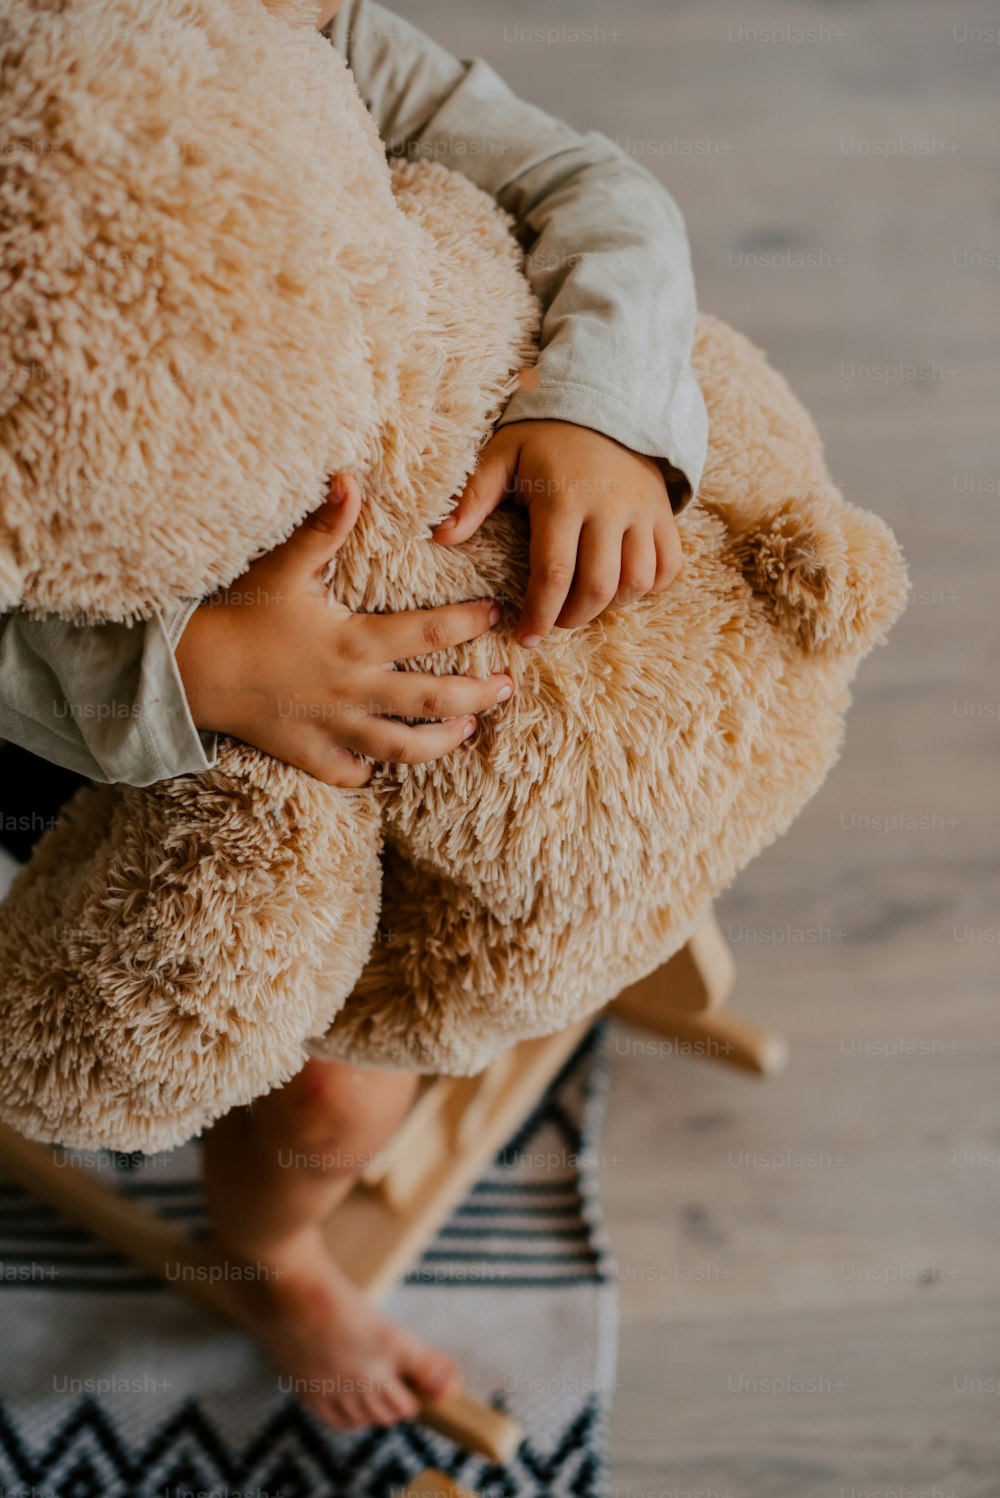 Un niño sosteniendo un oso de peluche encima de una alfombra